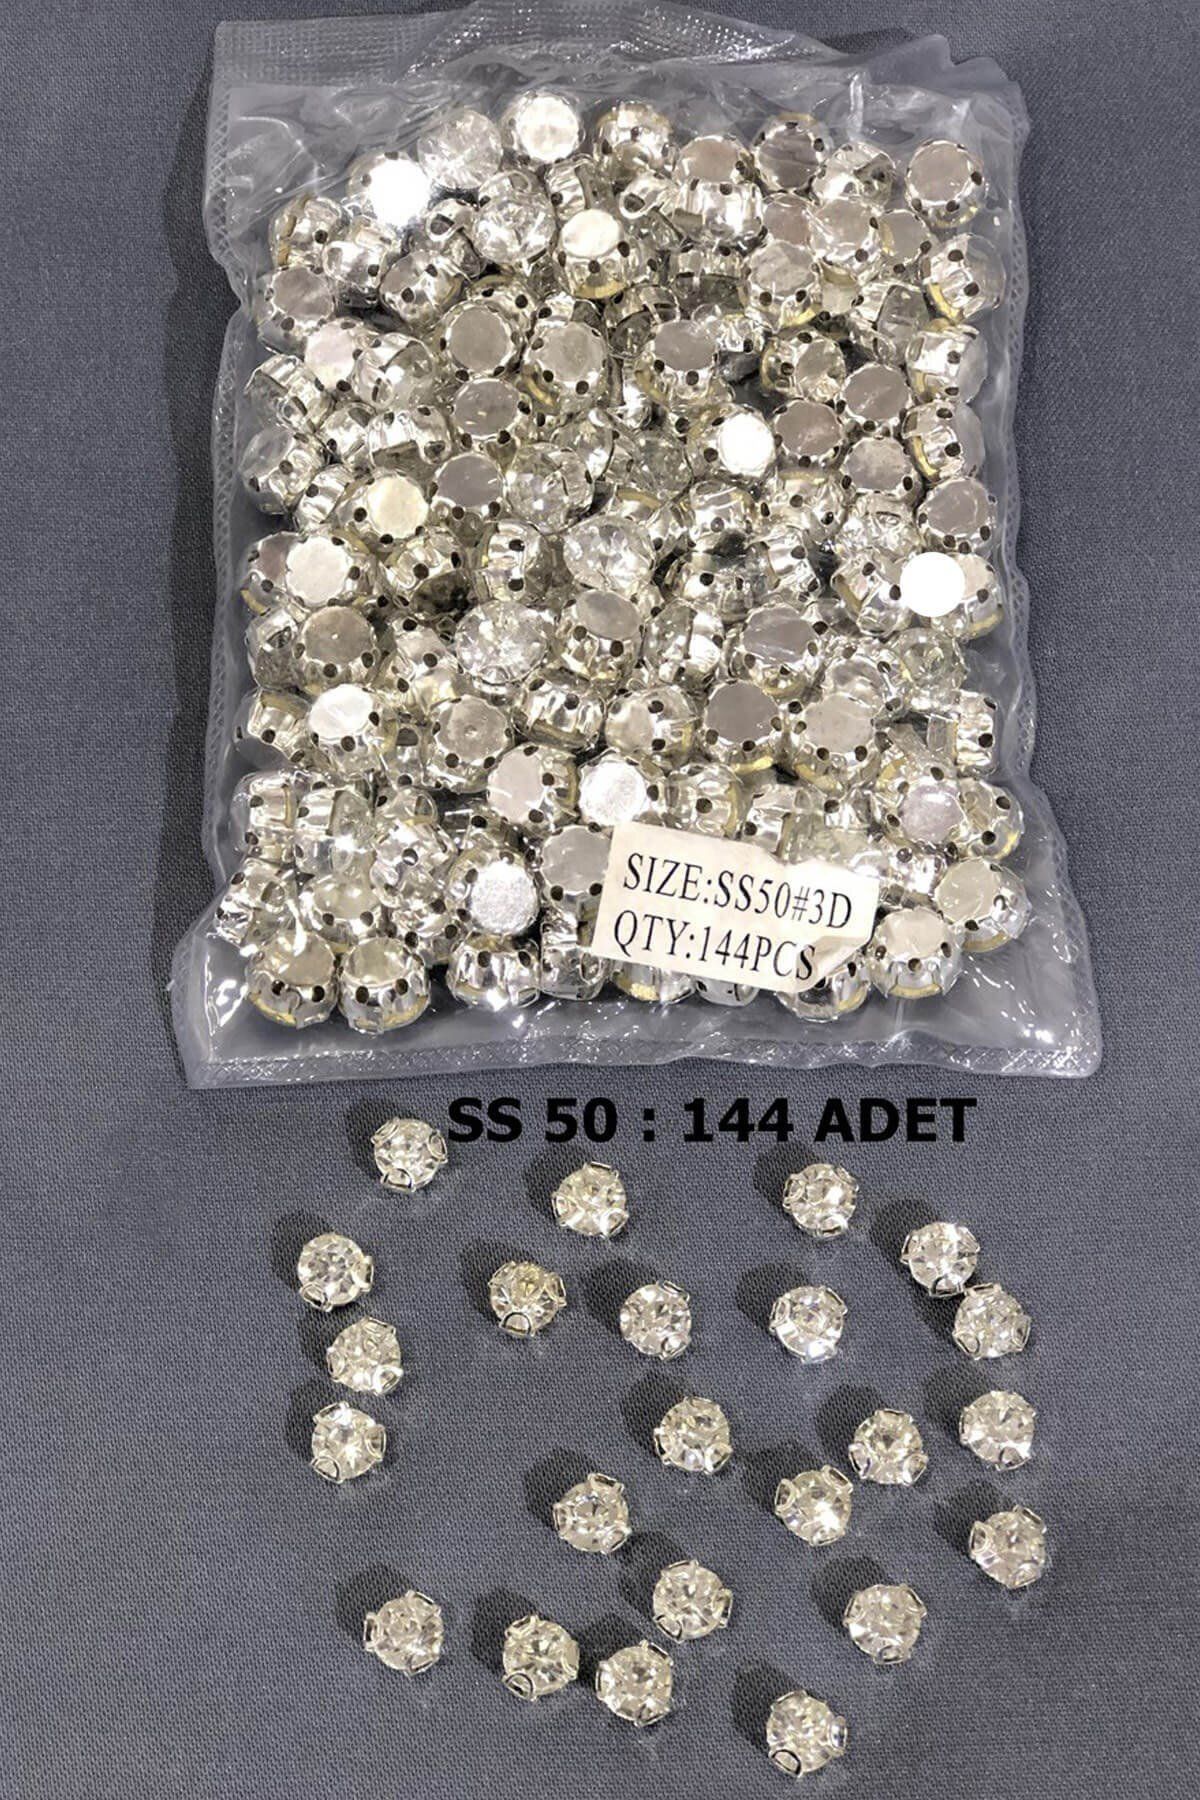 Hayalperest boncuk Gümüş Rengi Metal Kasalı Dikme Beyoğlu Taşı (1 Paket) Ss 50 144 Adet